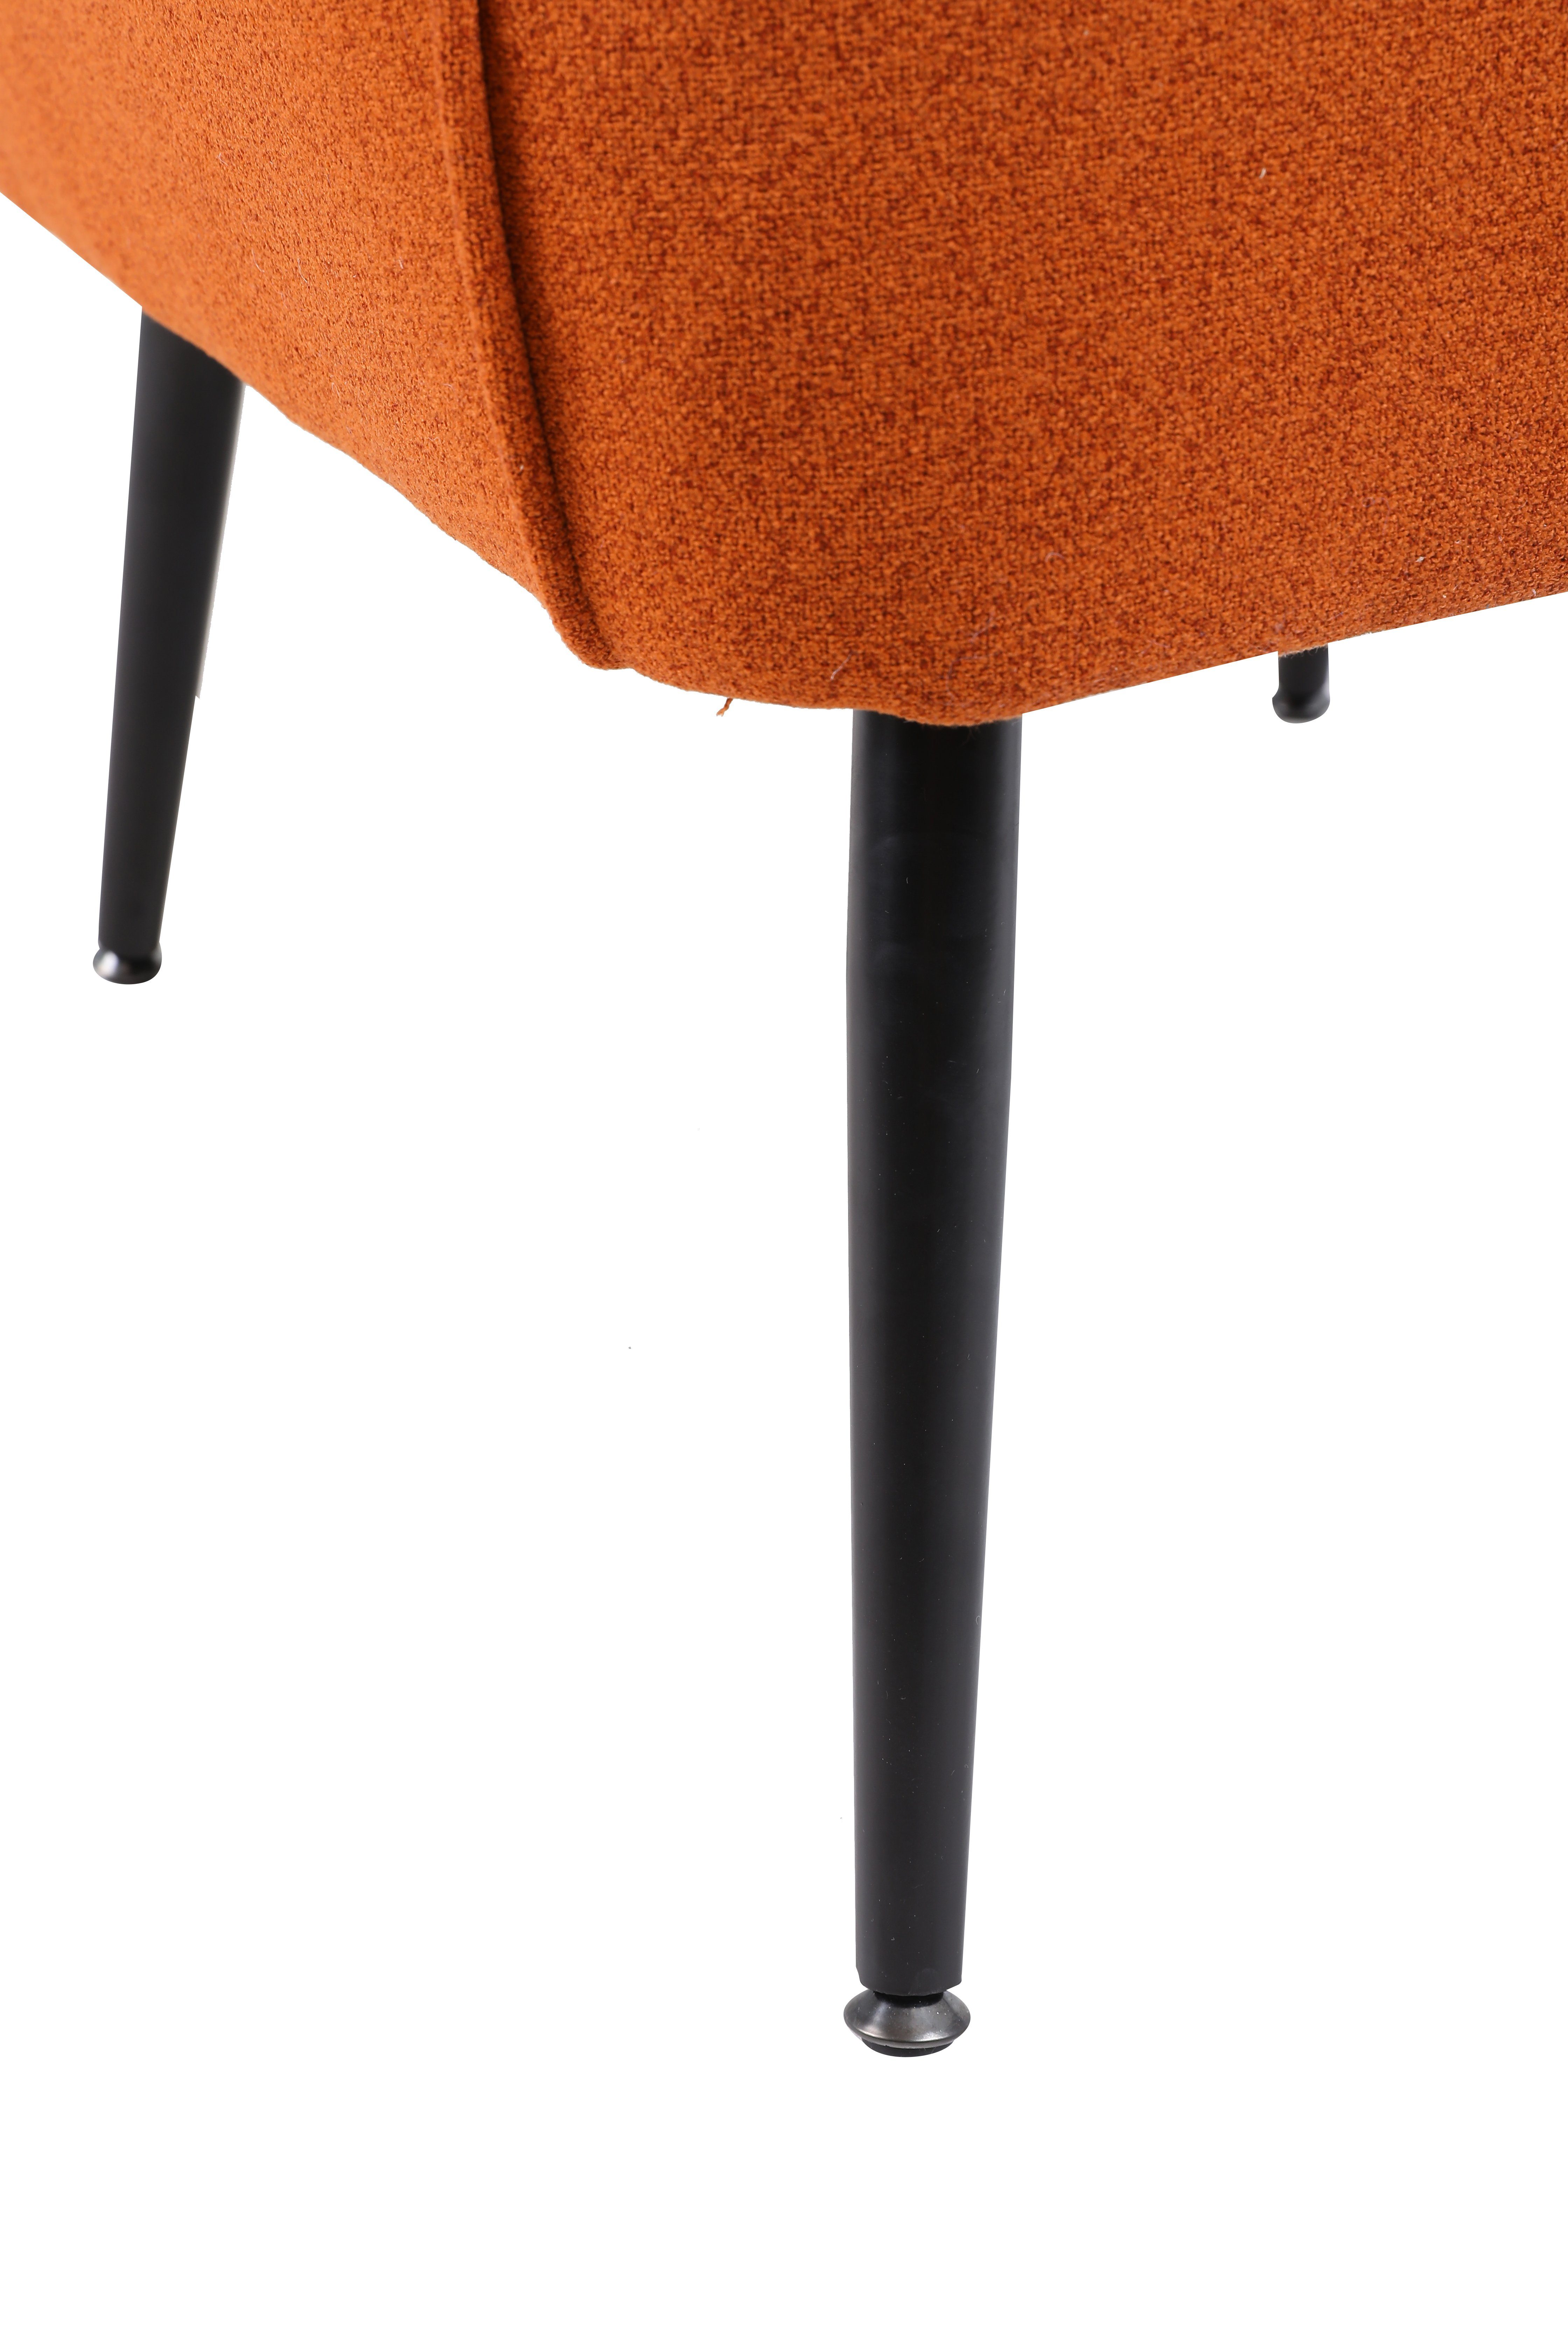 HAUSS SPLOE Loungesessel Fernsehsessel Stuhl), Metallbeinen Stuhl Kaffee Ohrensessel Polstersessel Freizeit Einzelsofa Einzelsofa Gepolsterte mit (Büro orange